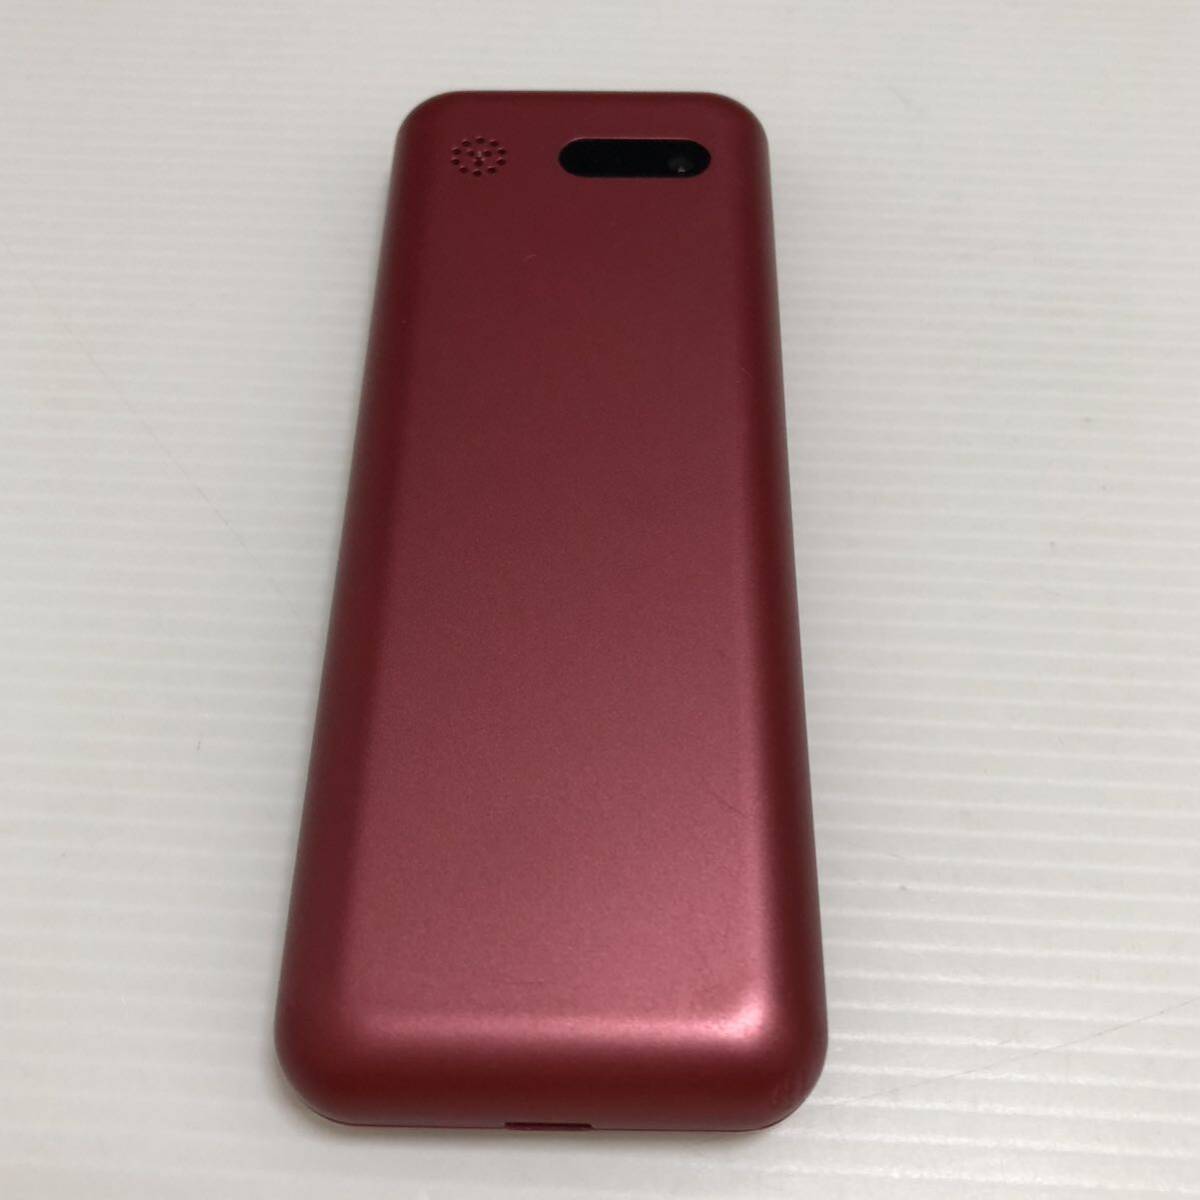 m282-1021-19 Simply мобильный телефон красный SoftBank ограничение использования 0galake-